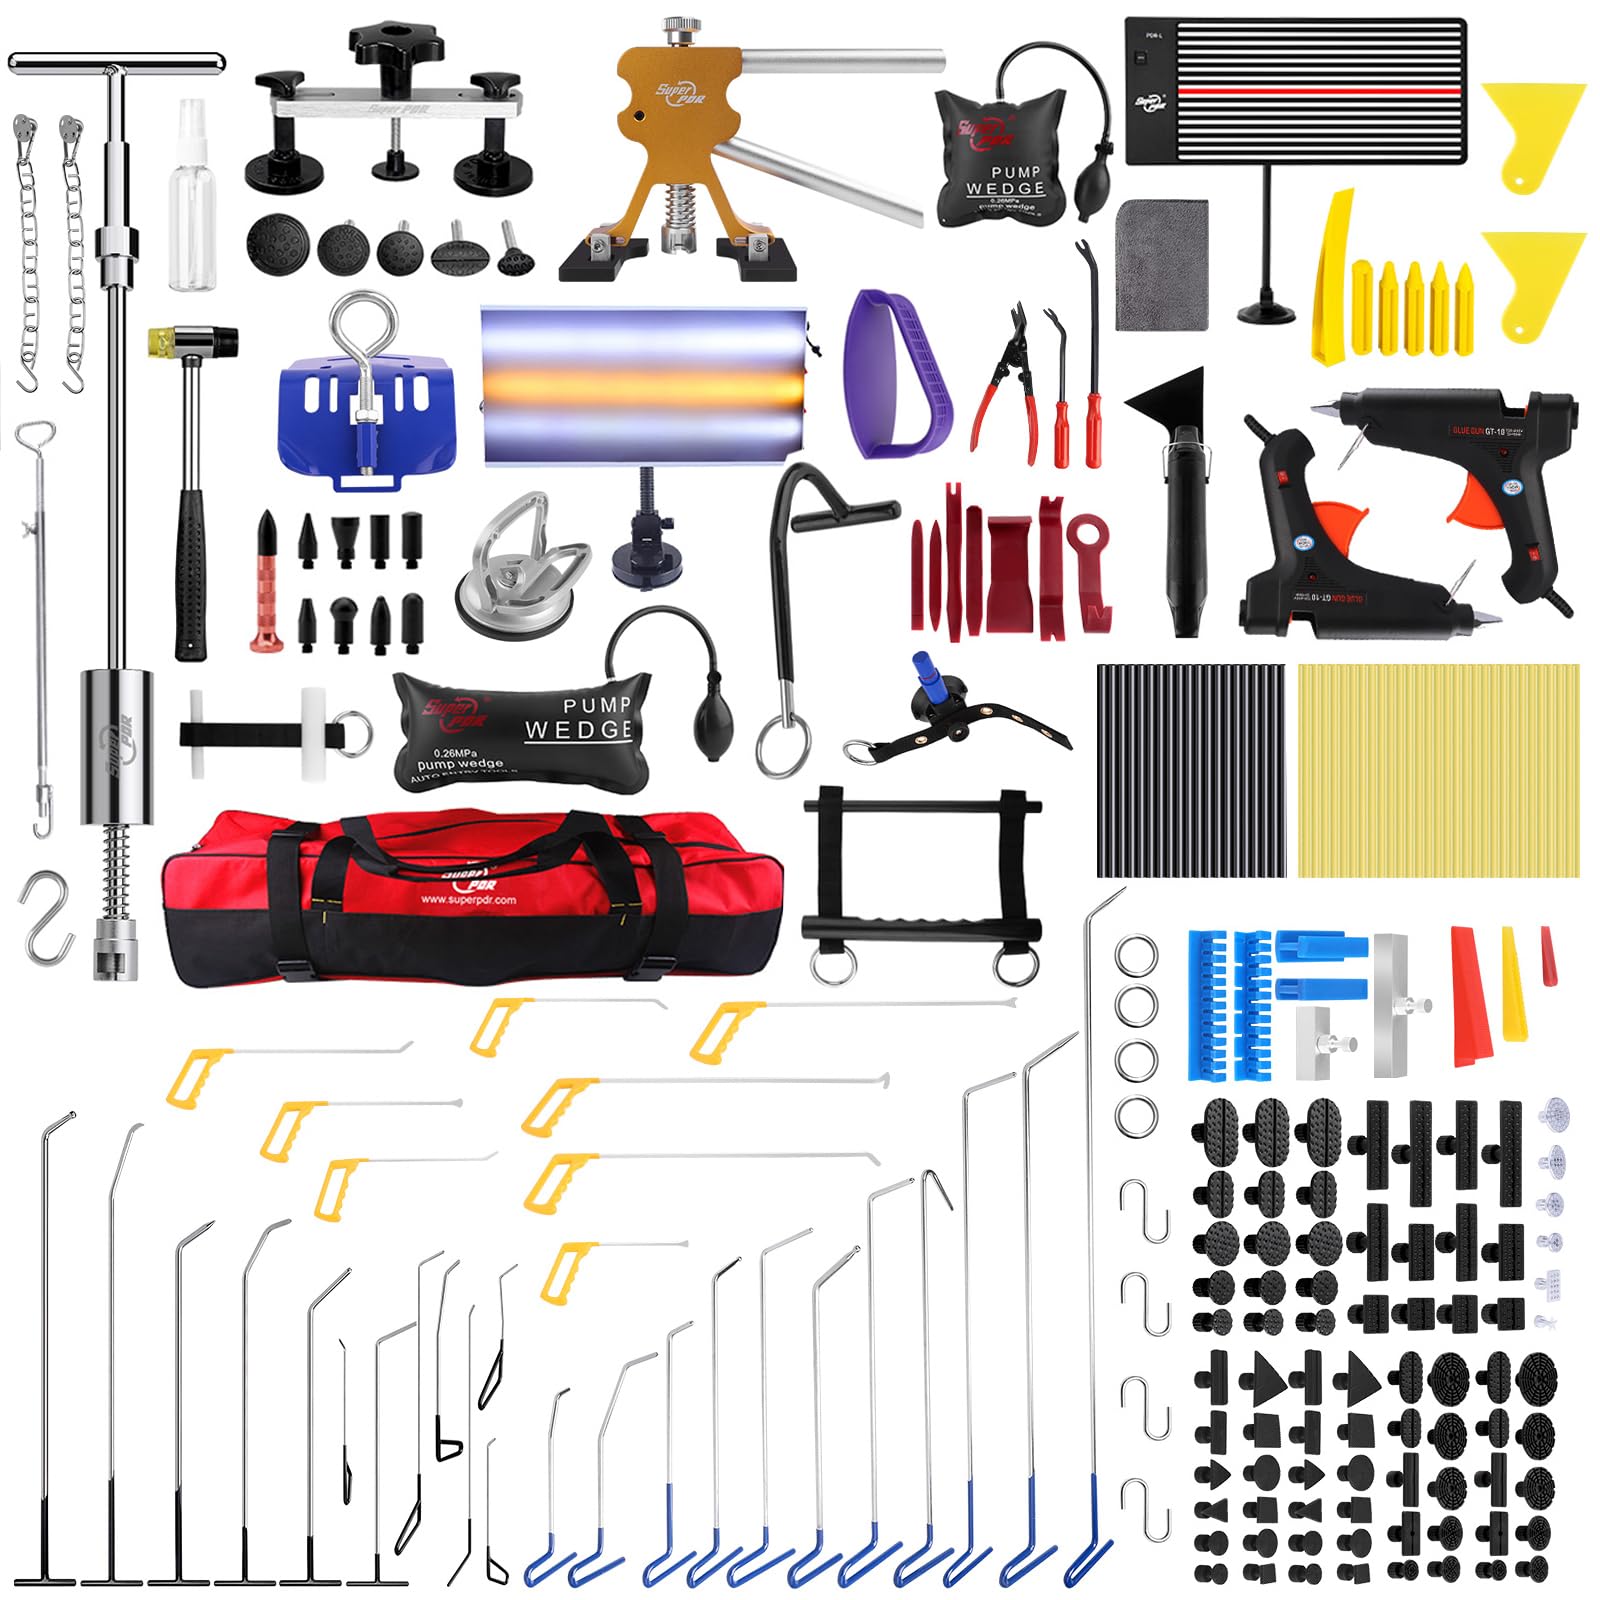 PDR Werkzeuge Set zur Reparatur von Fahrzeugdellen und Ausbeulwerkzeug für Karosserien - Entfernen Sie Dellen und Hagelschäden am Auto (150 Stück) von PDR TOOLS